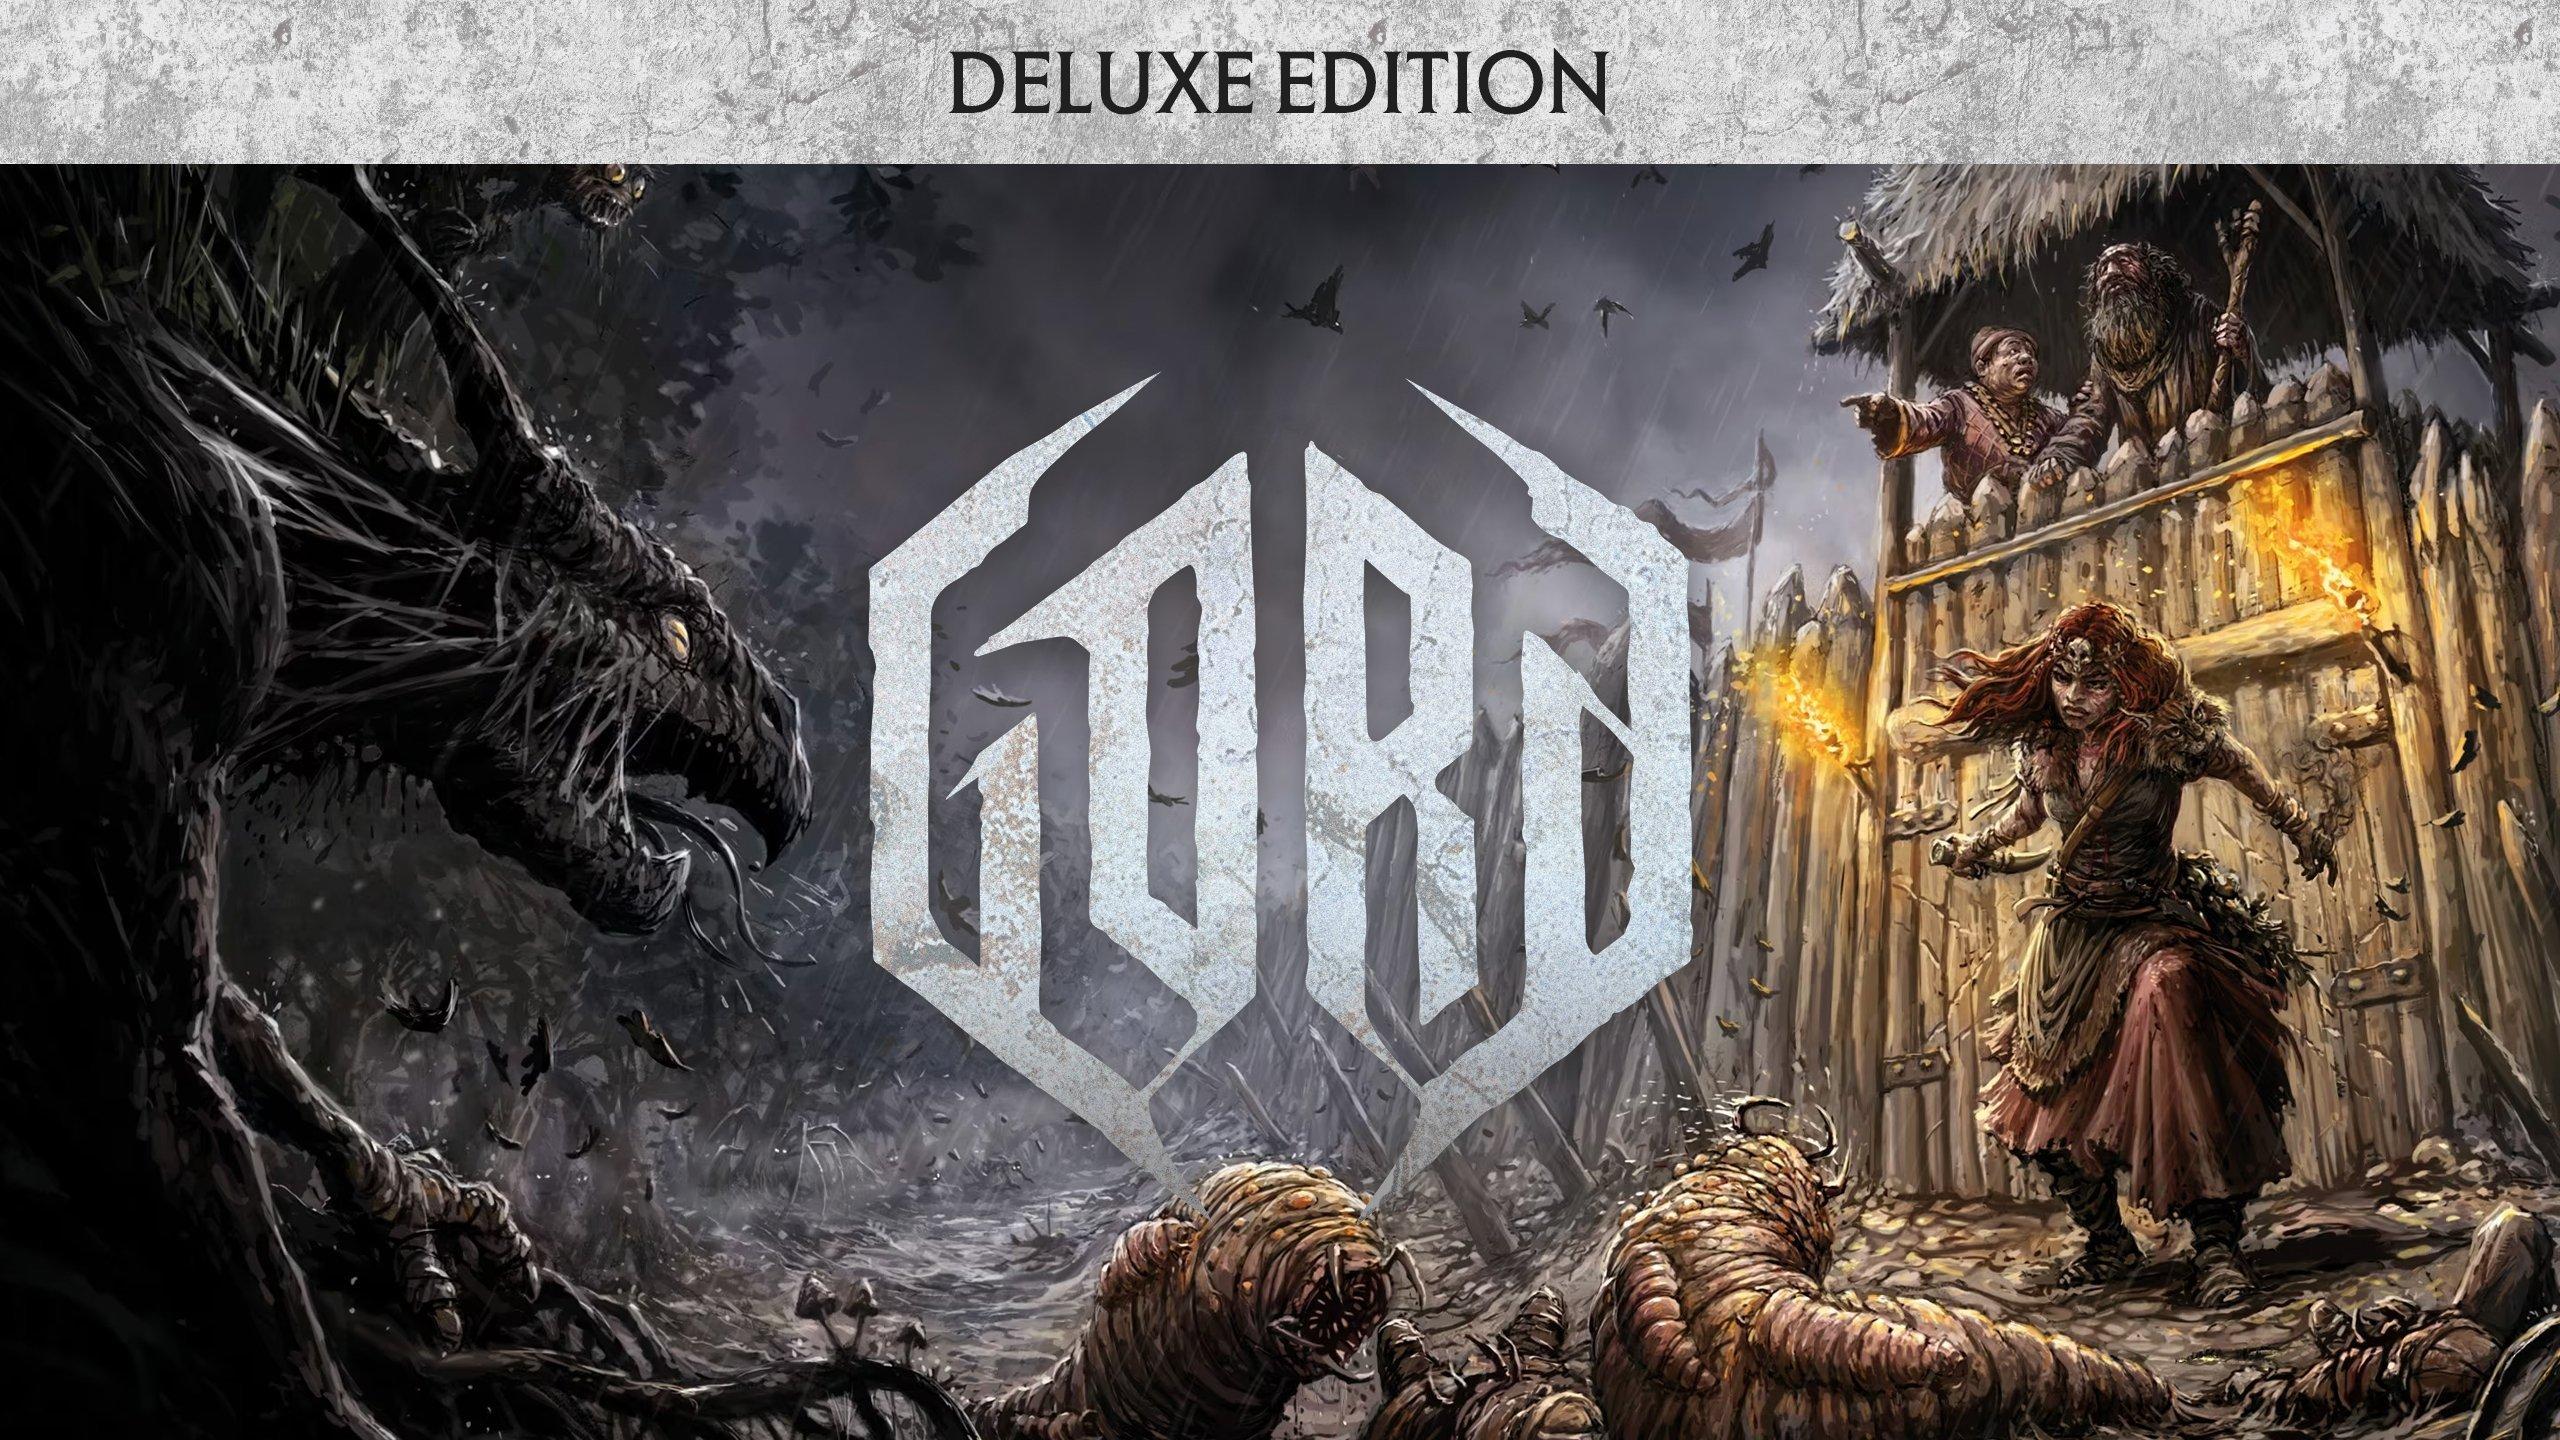 Gord Deluxe - PC